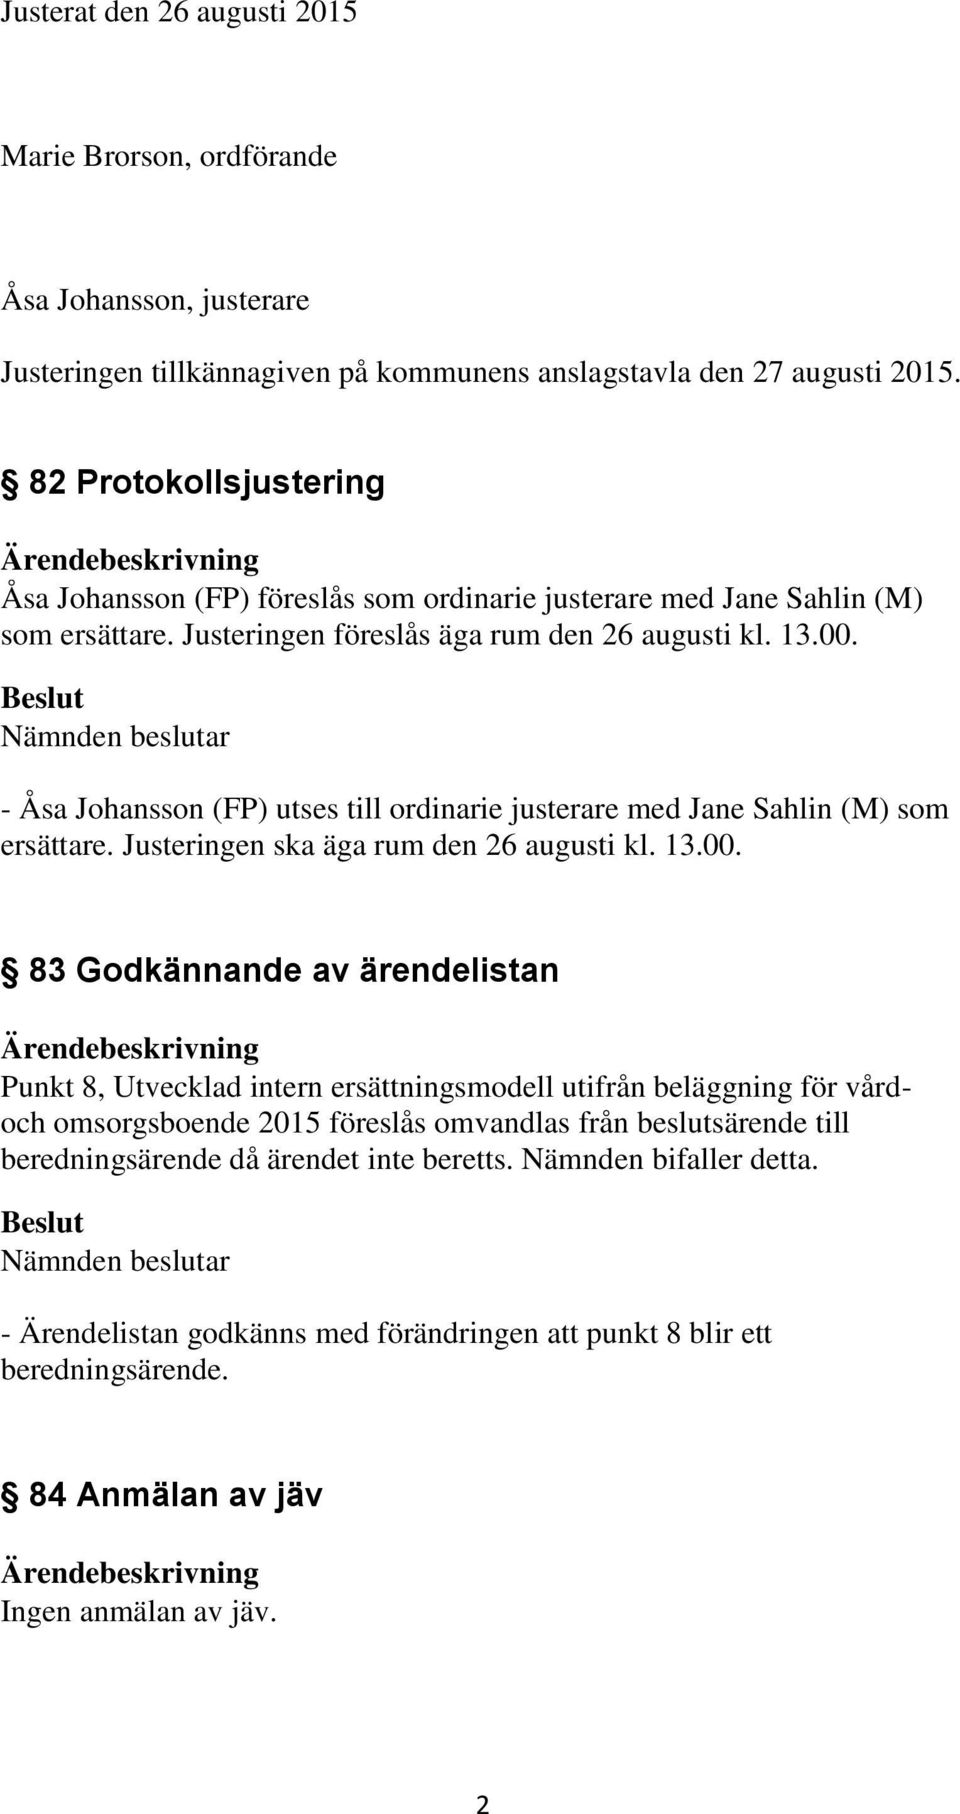 - Åsa Johansson (FP) utses till ordinarie justerare med Jane Sahlin (M) som ersättare. Justeringen ska äga rum den 26 augusti kl. 13.00.